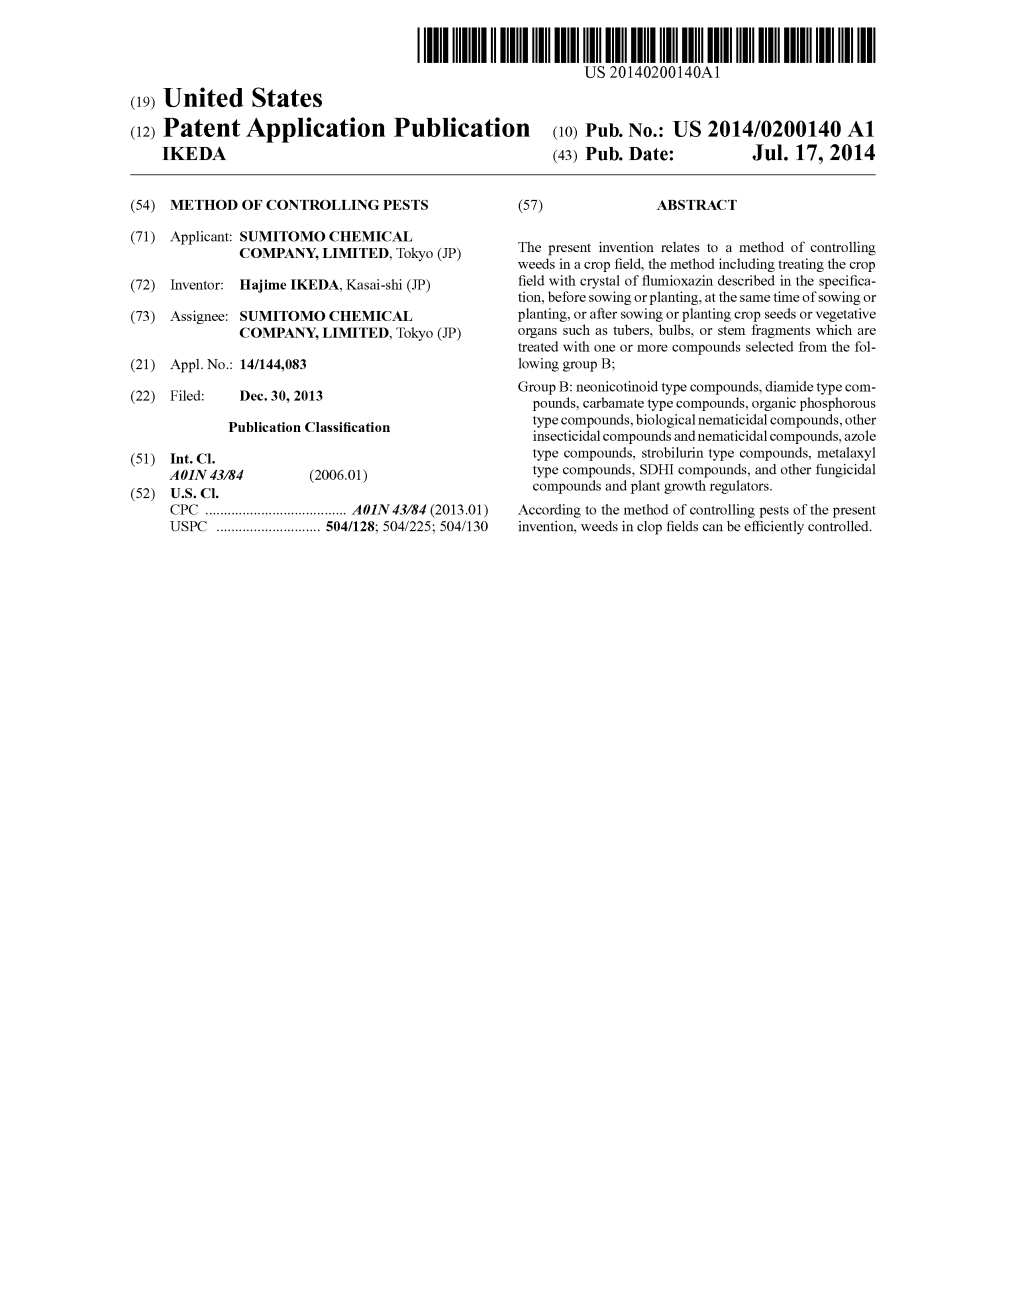 (12) Patent Application Publication (10) Pub. No.: US 2014/0200140 A1 KEDA (43) Pub